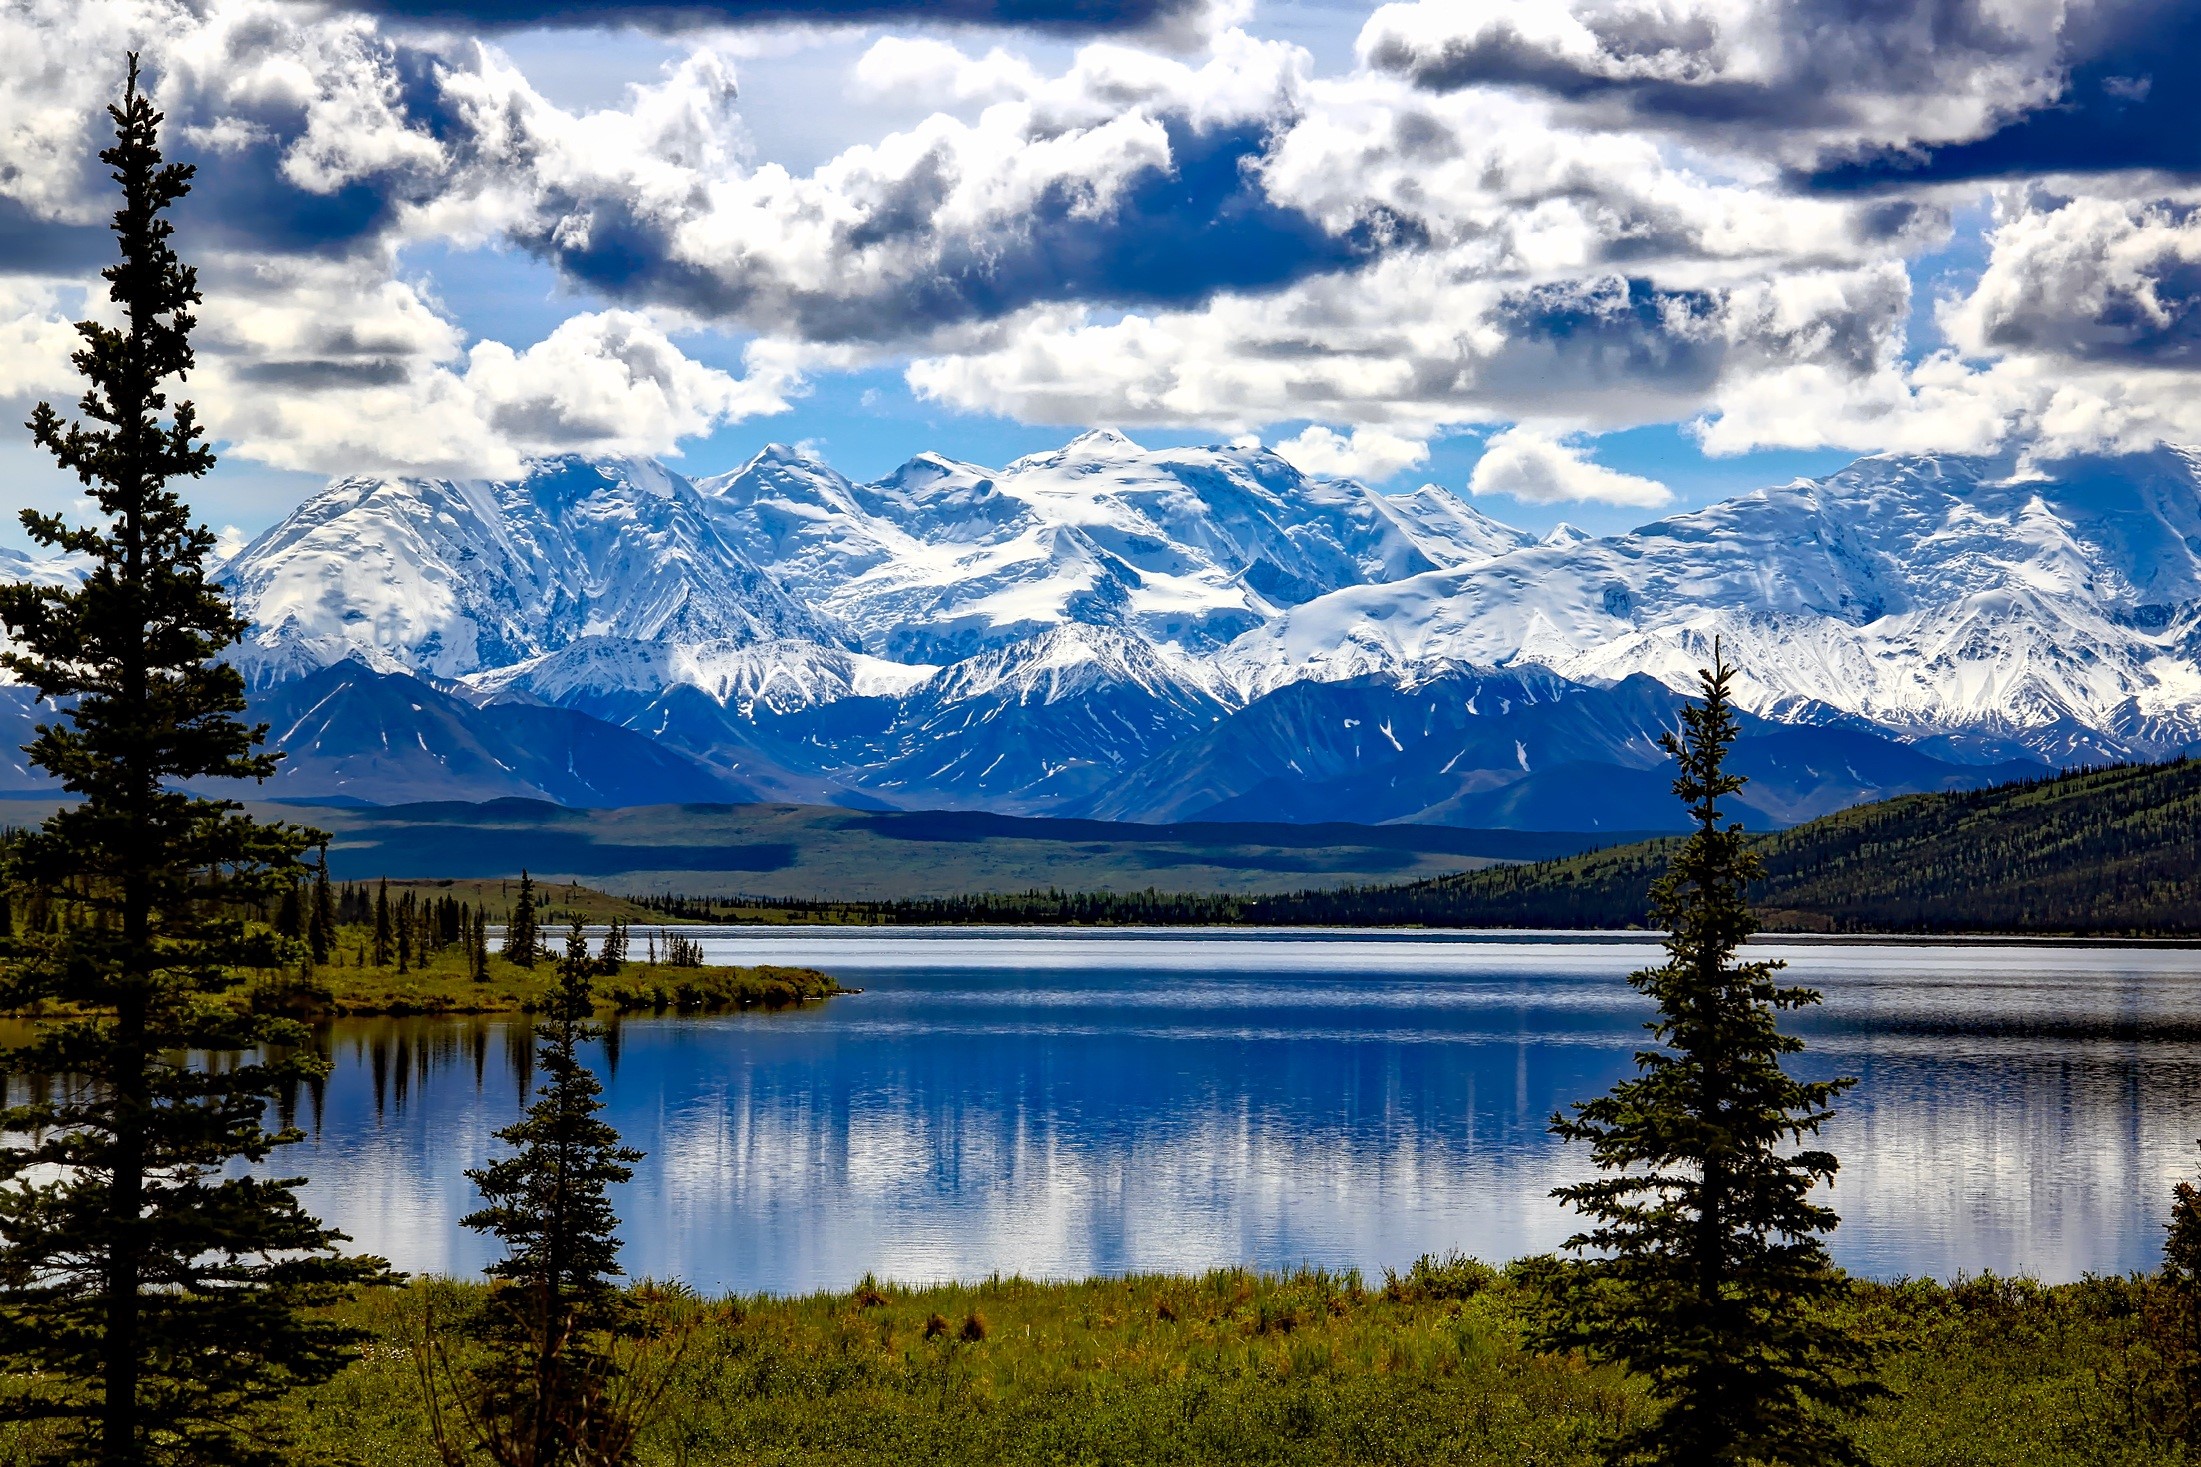 Denali national park in Alaska